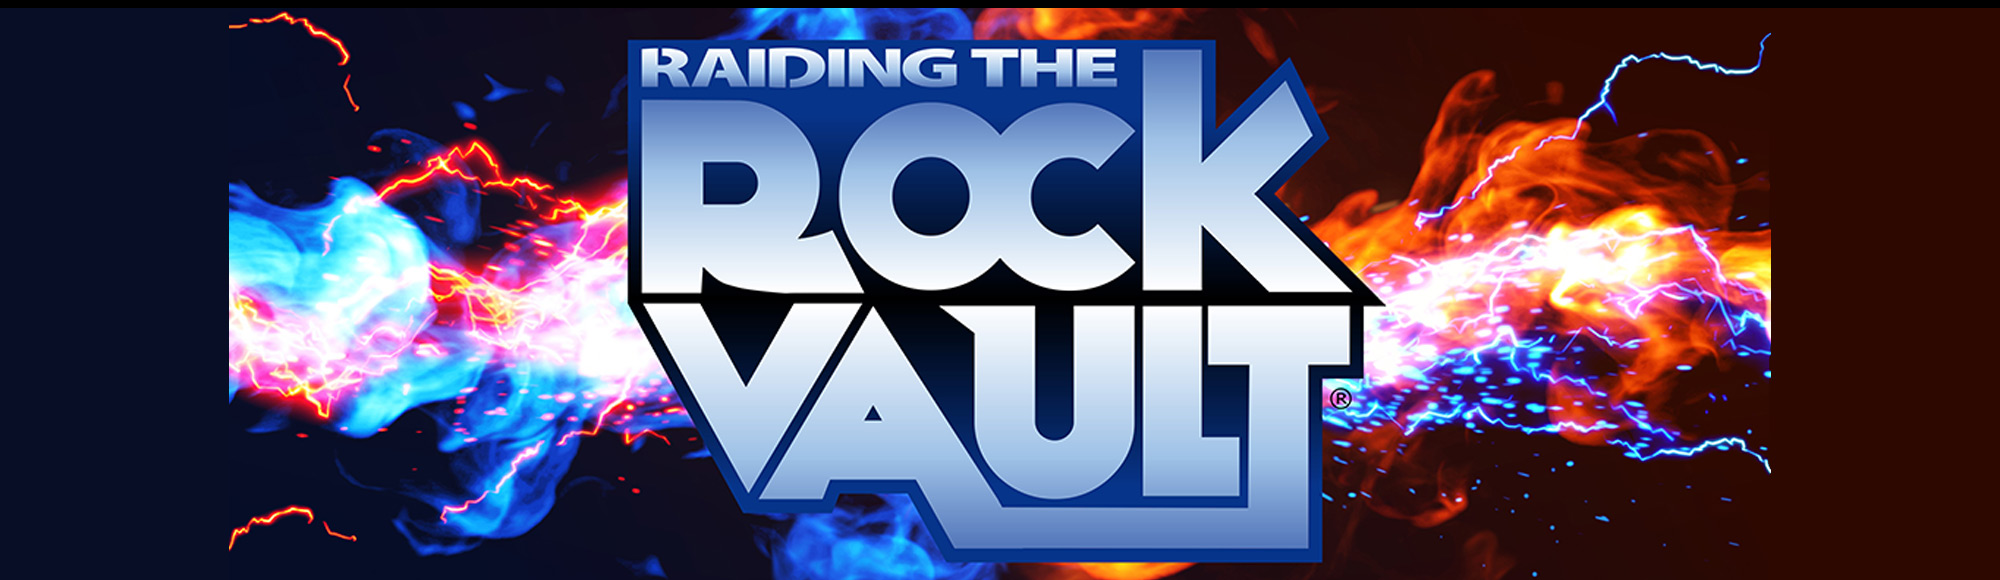 Raiding the Rock Vault at Hard Rock Cafe show